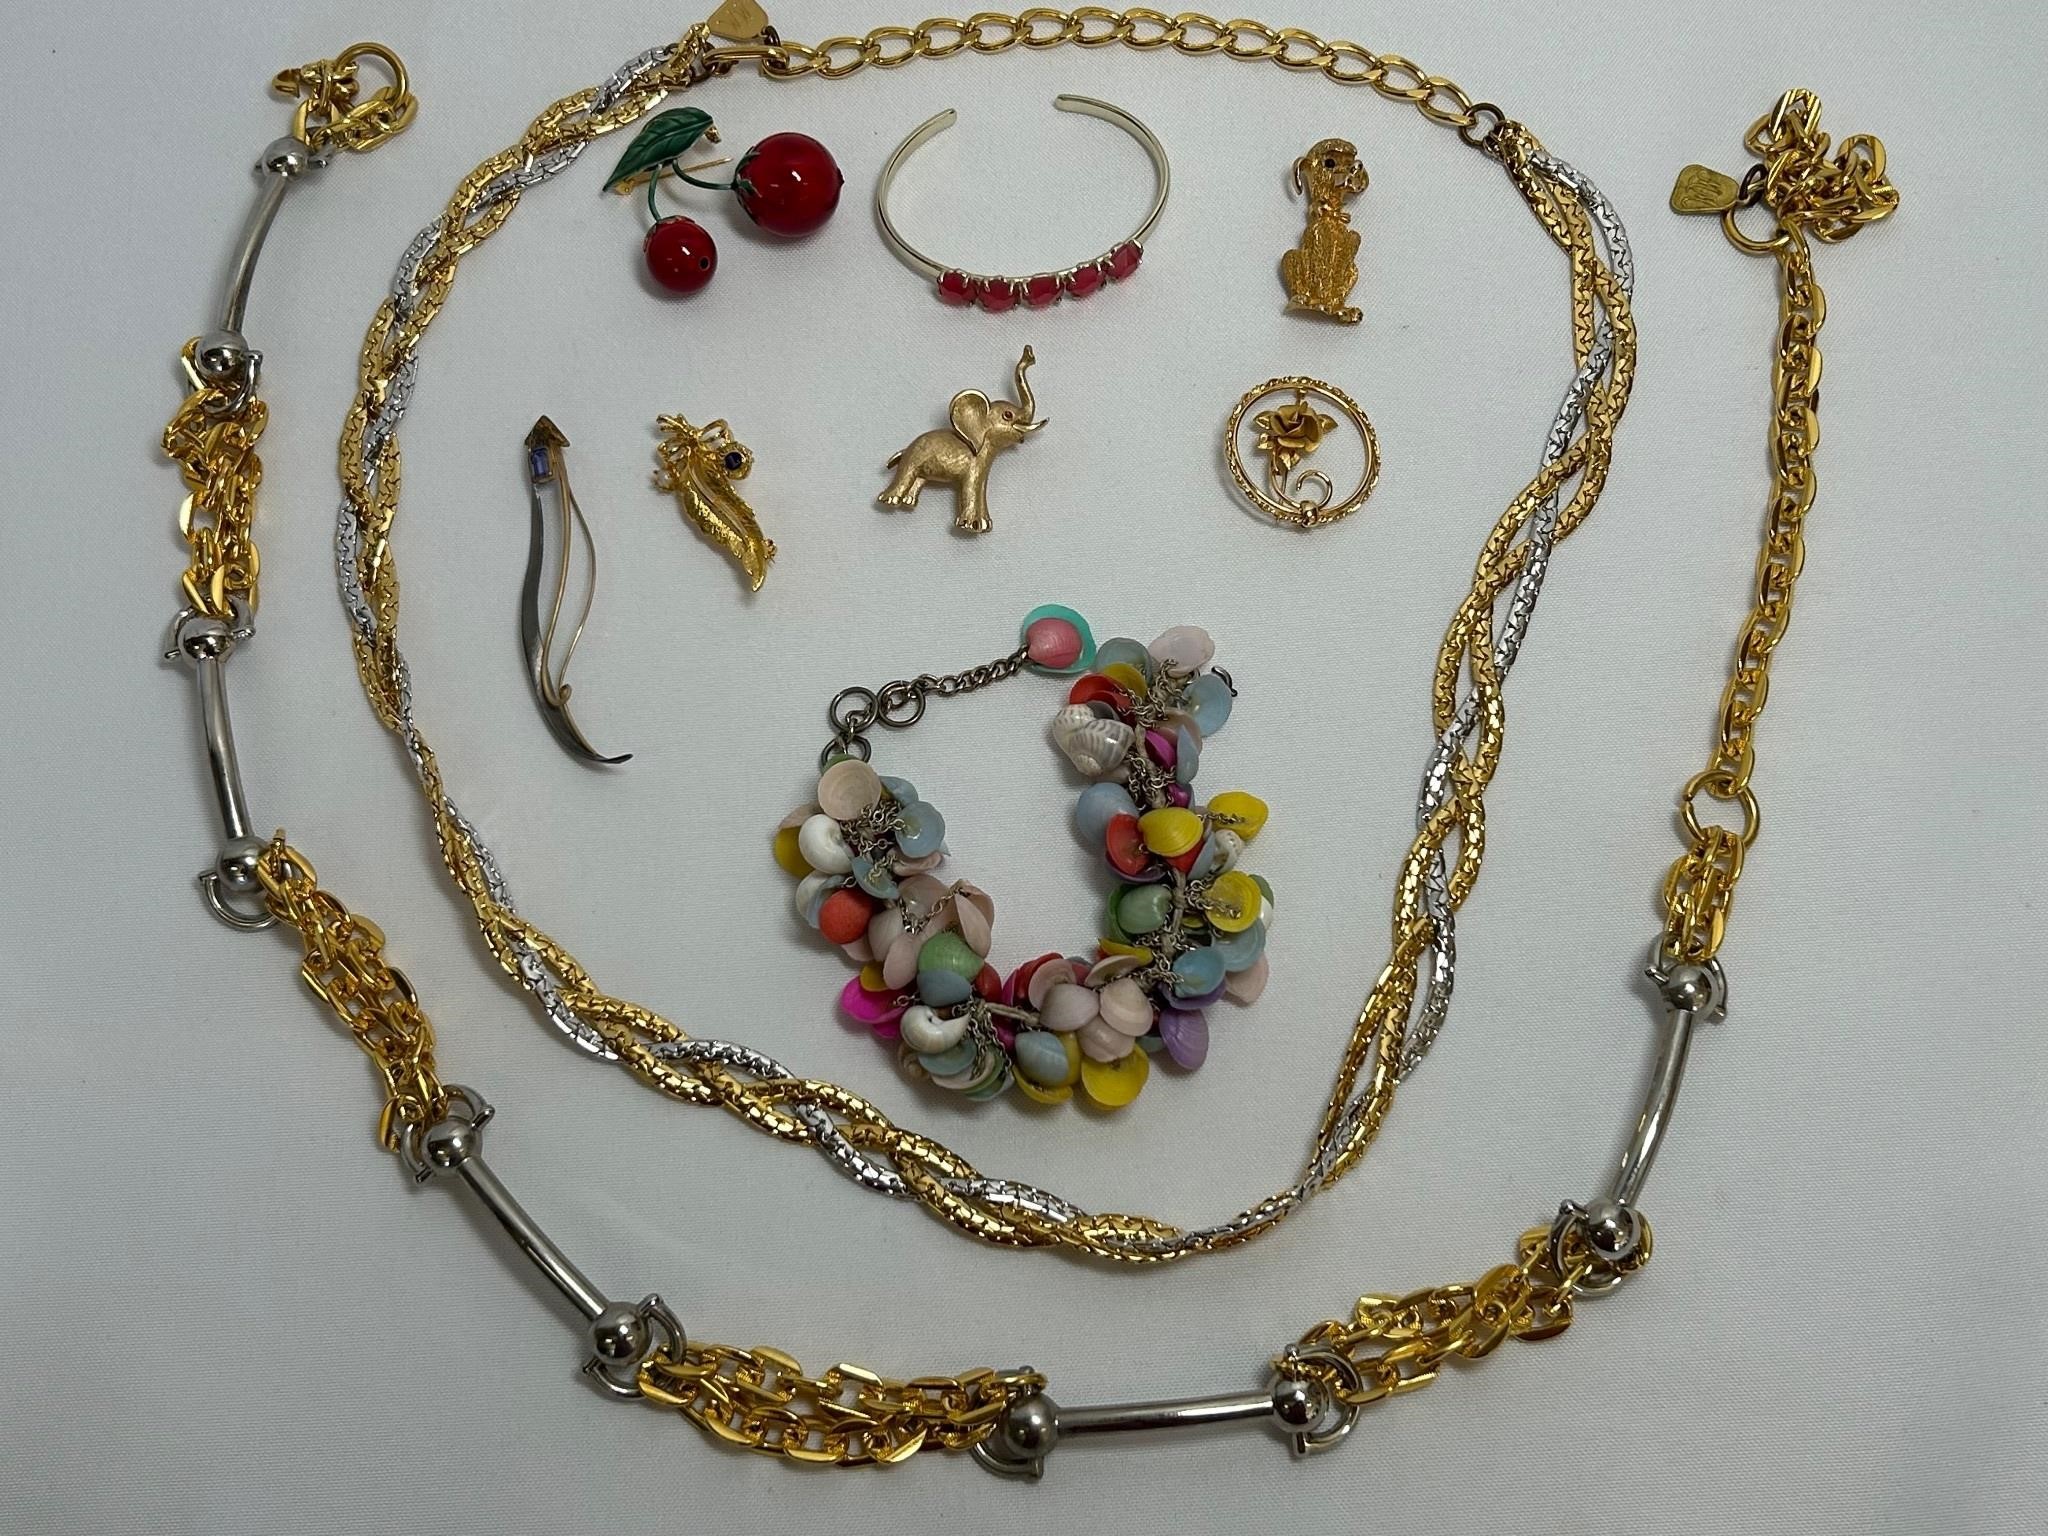 Pins, Necklace, Bracelets & More